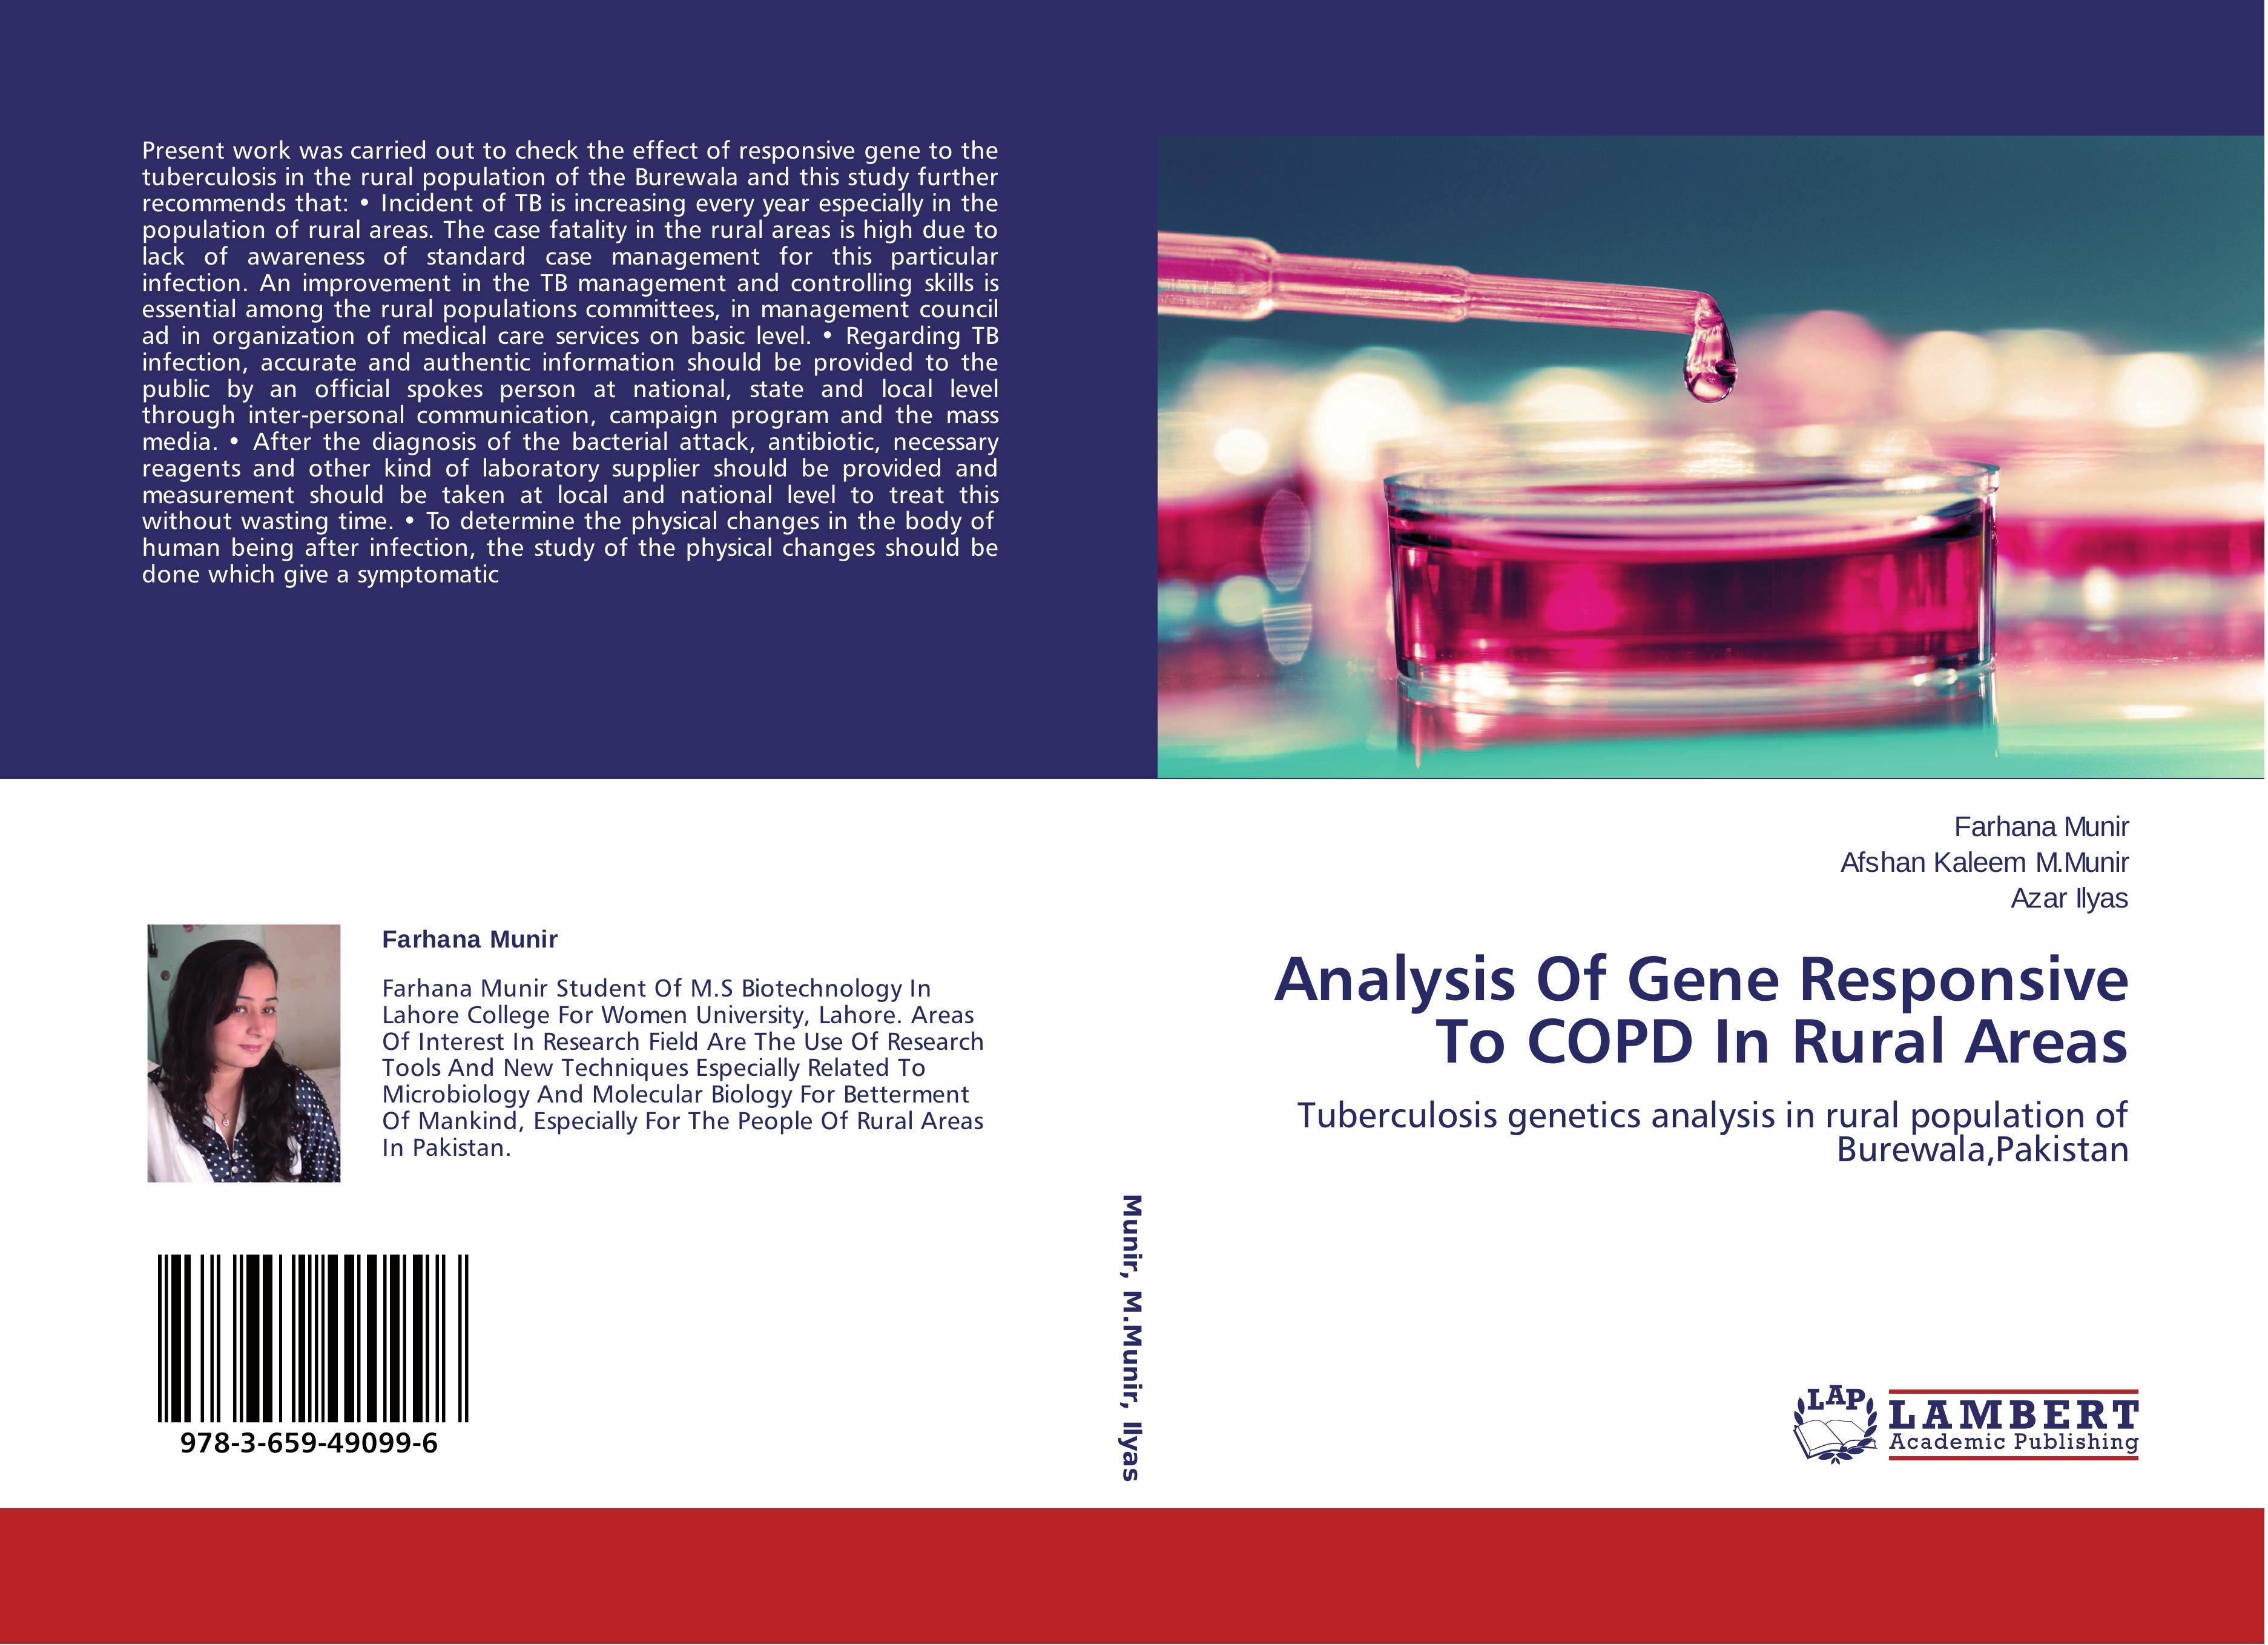 Analysis Of Gene Responsive To COPD In Rural Areas - Farhana Munir Afshan Kaleem M.Munir Azar Ilyas